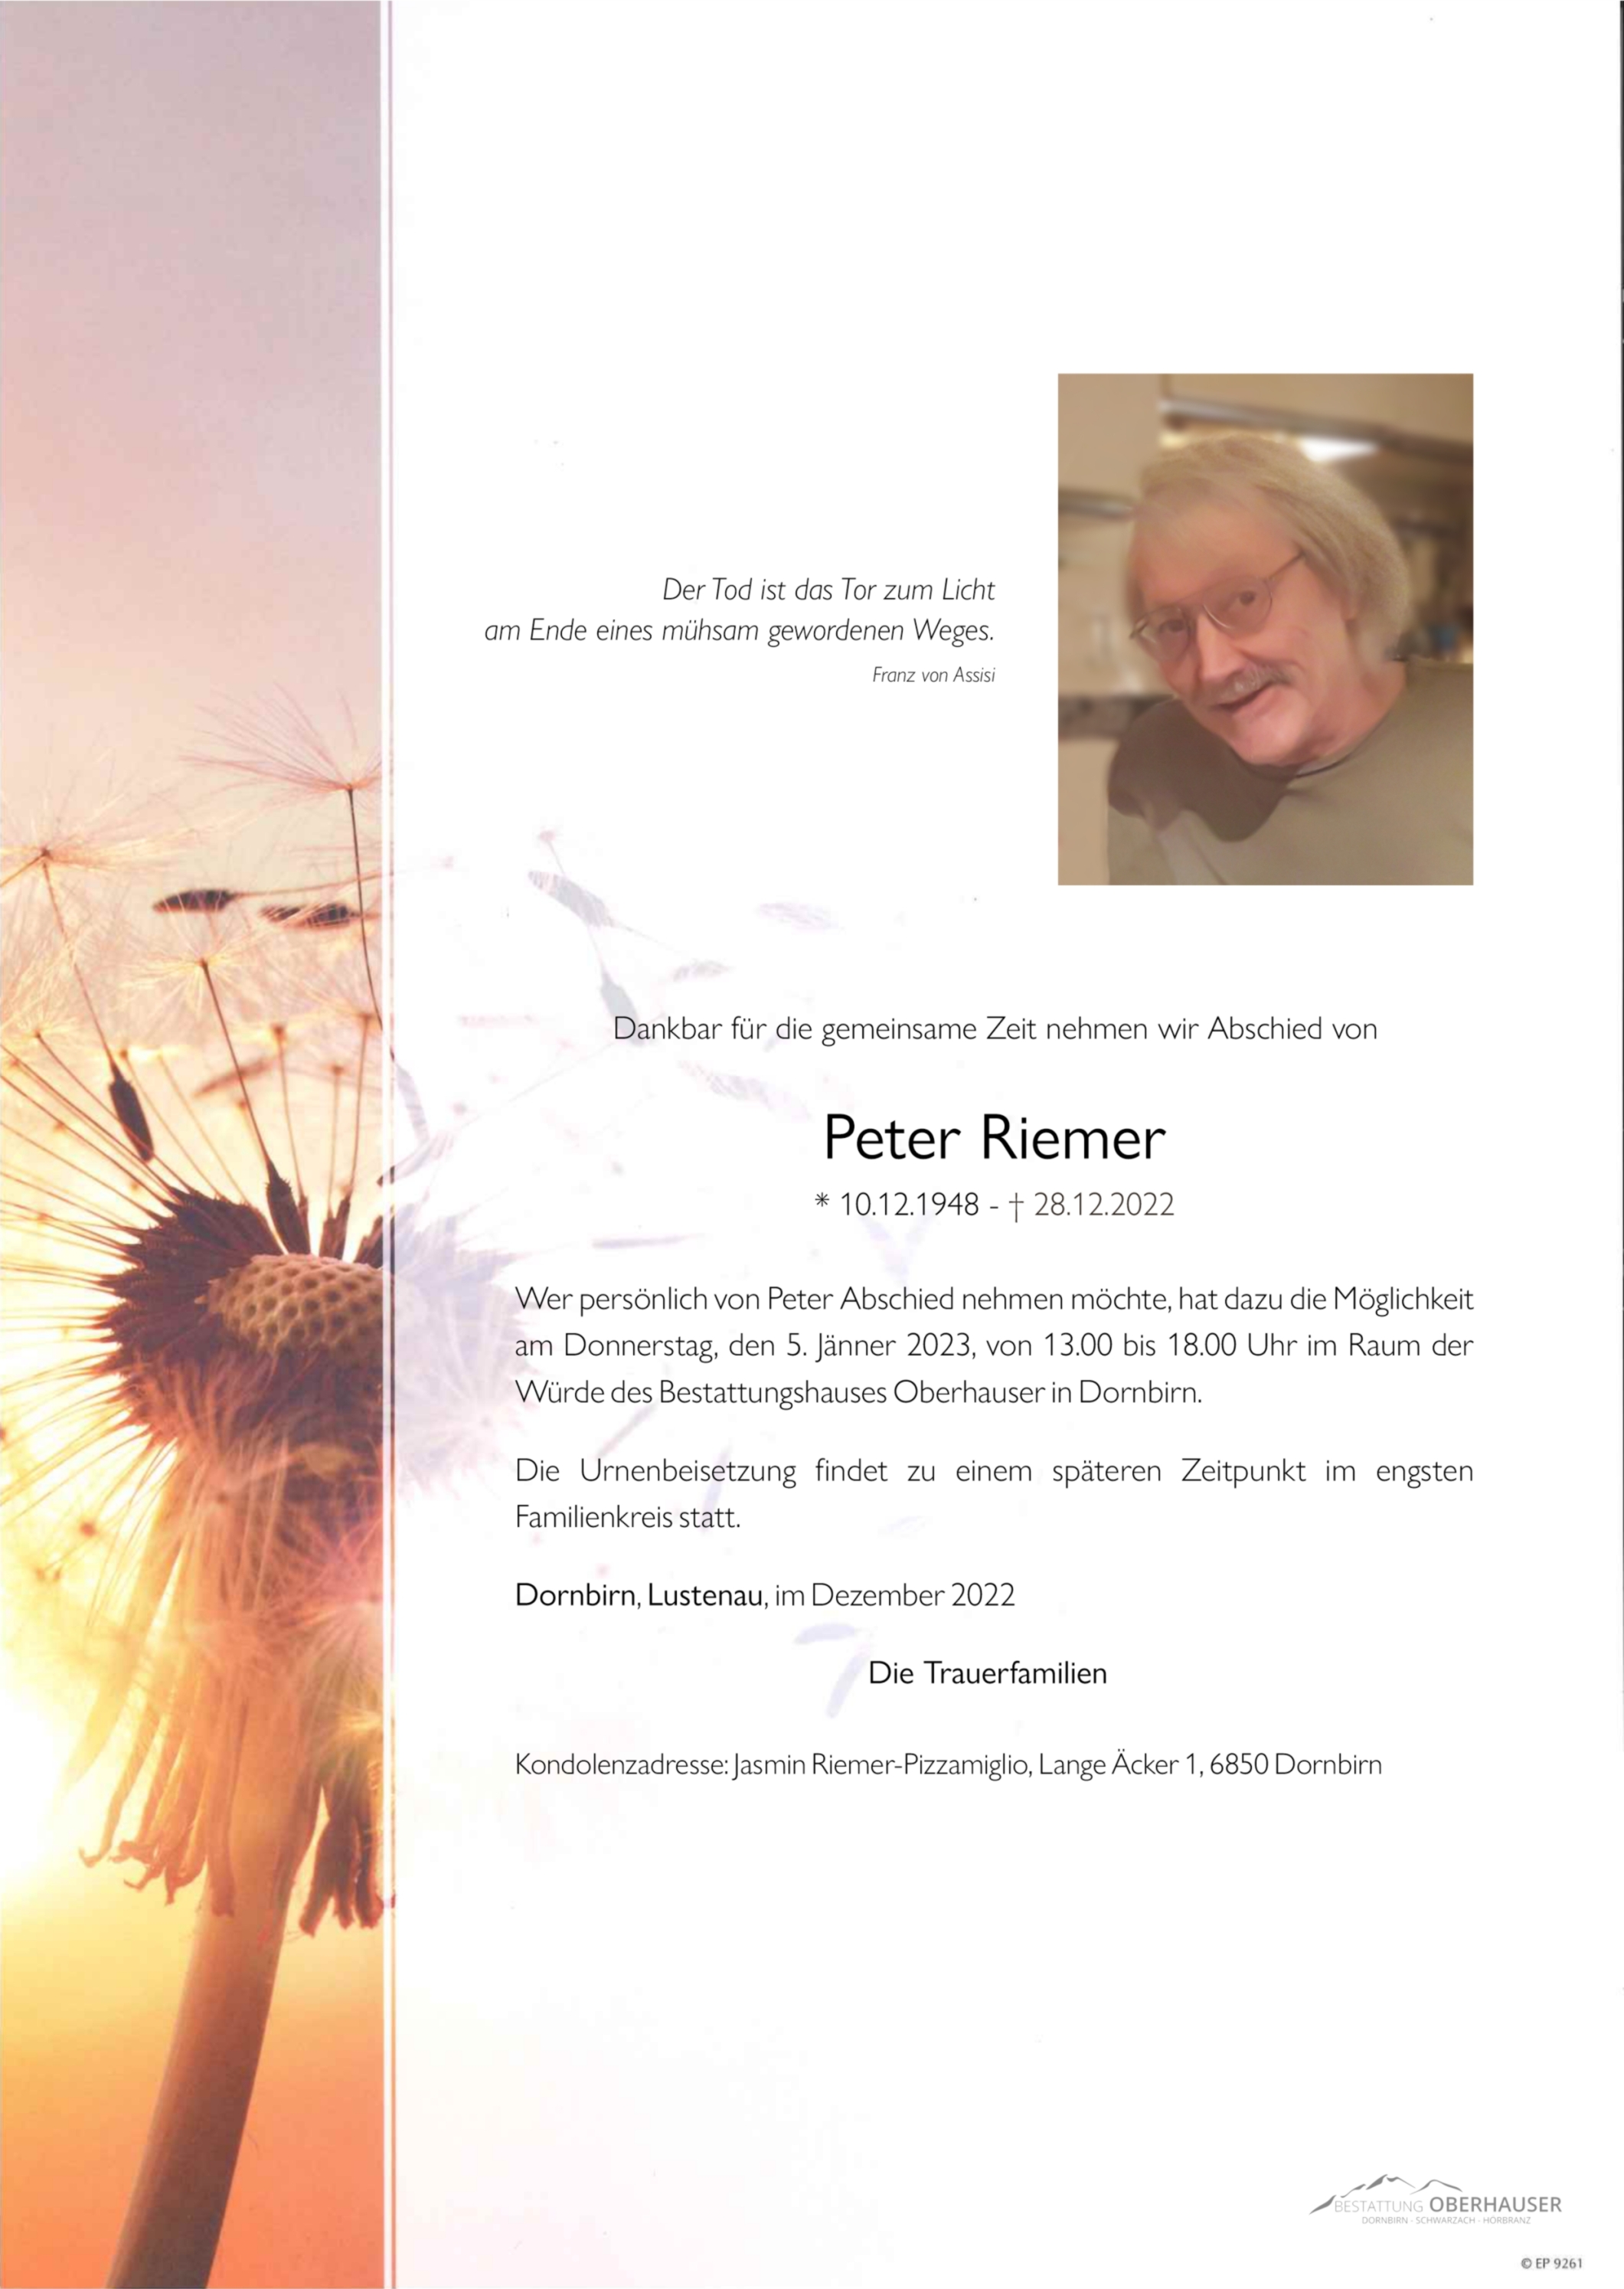 Peter Riemer